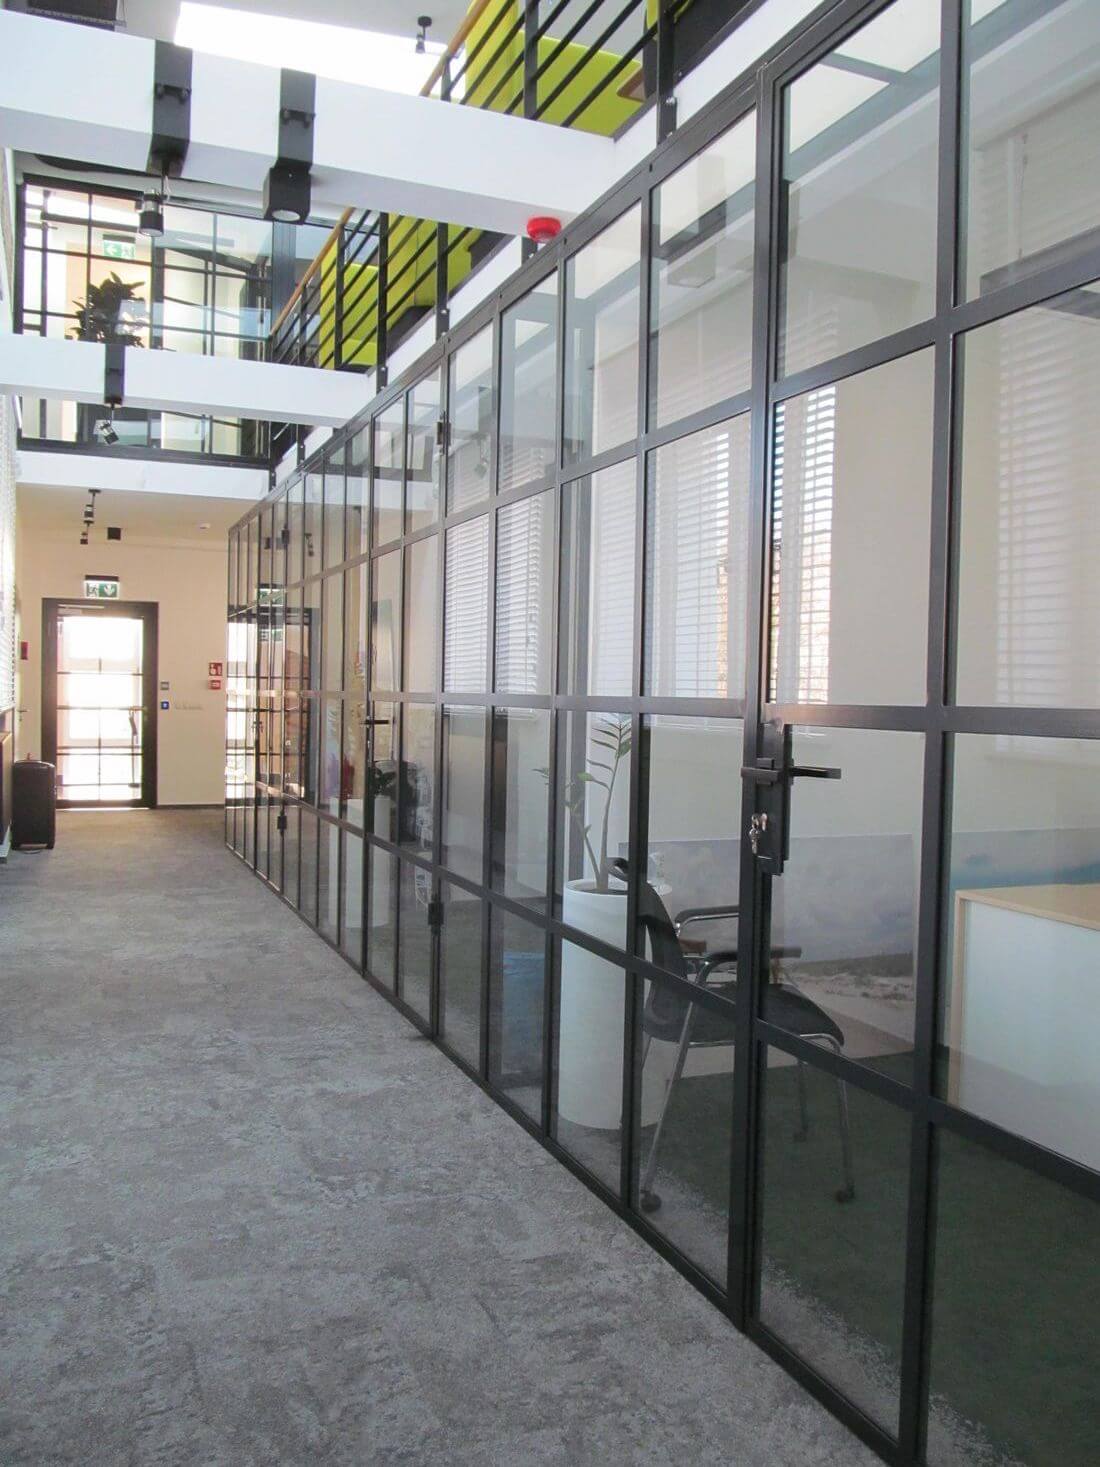 Sistema de puertas y paredes del vidrio de estilo industrial hecho de acero estructural